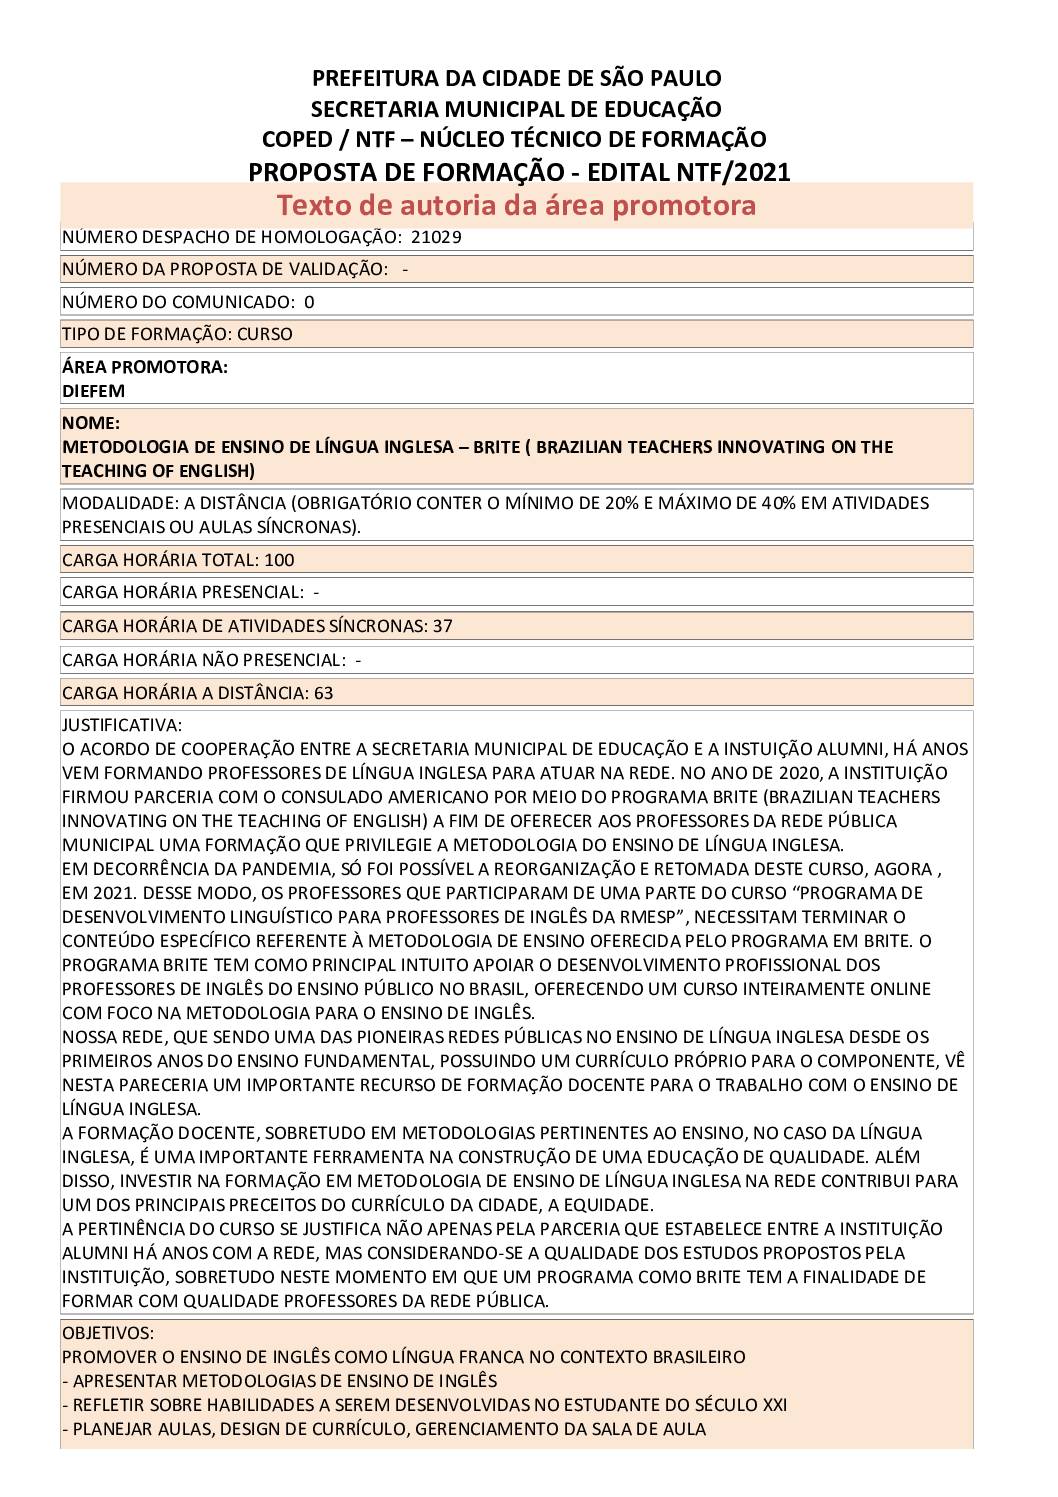 PDF com informações sobre o curso: METODOLOGIA DE ENSINO DE LÍNGUA INGLESA – BRITE (BRAZILIAN TEACHERS INNOVATING ON THE TEACHING OF ENGLISH)